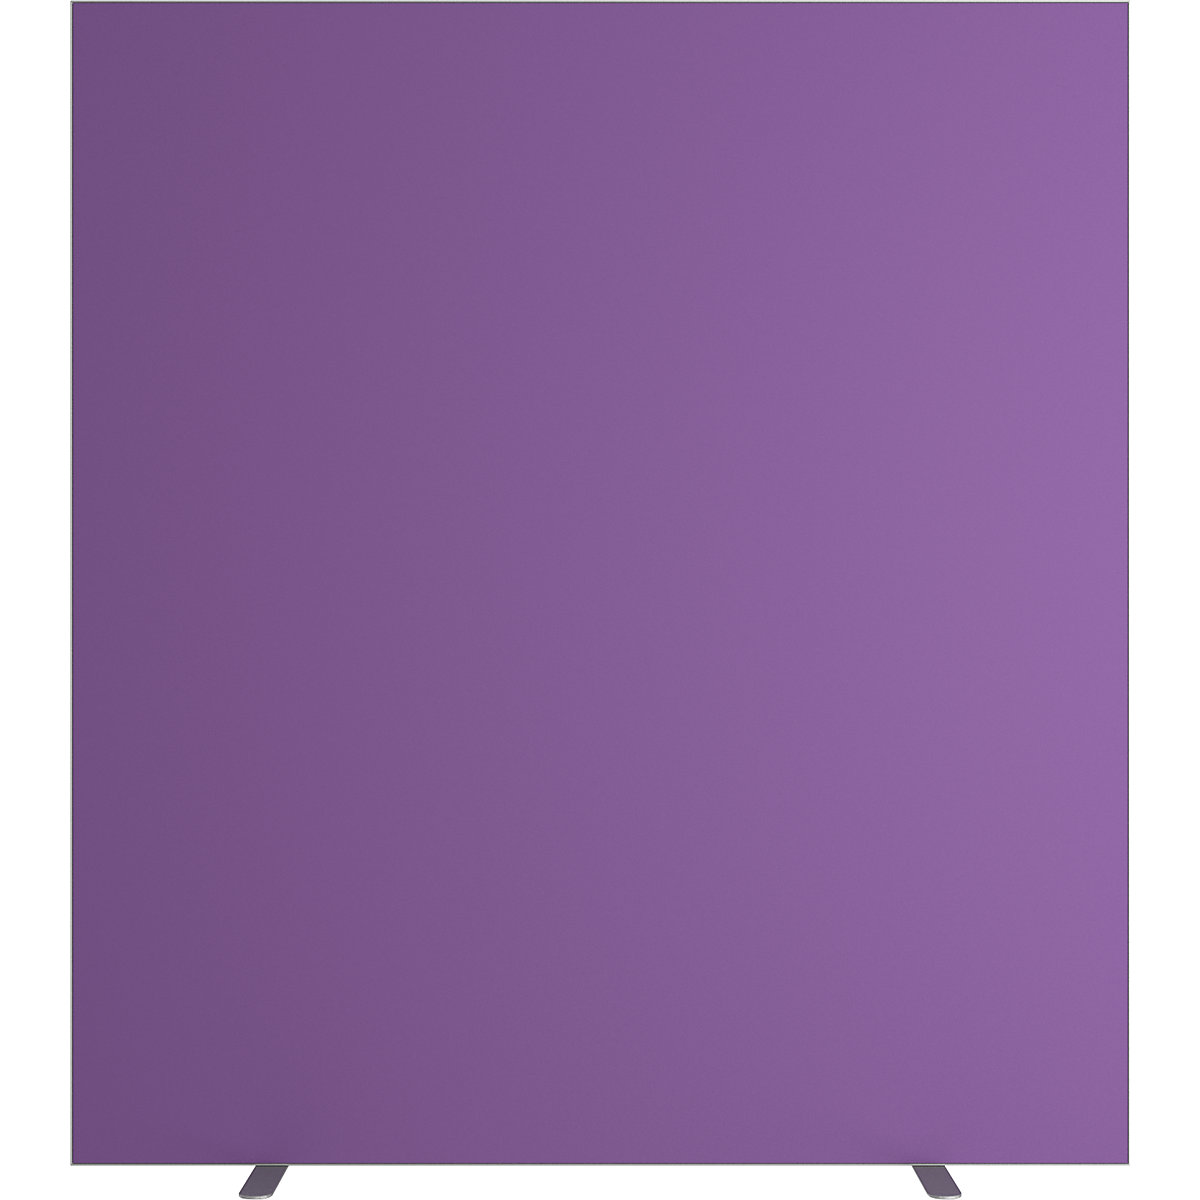 Dělicí stěna easyScreen, jednobarevná, s protihlukovou úpravou, fialová, šířka 1600 mm-9